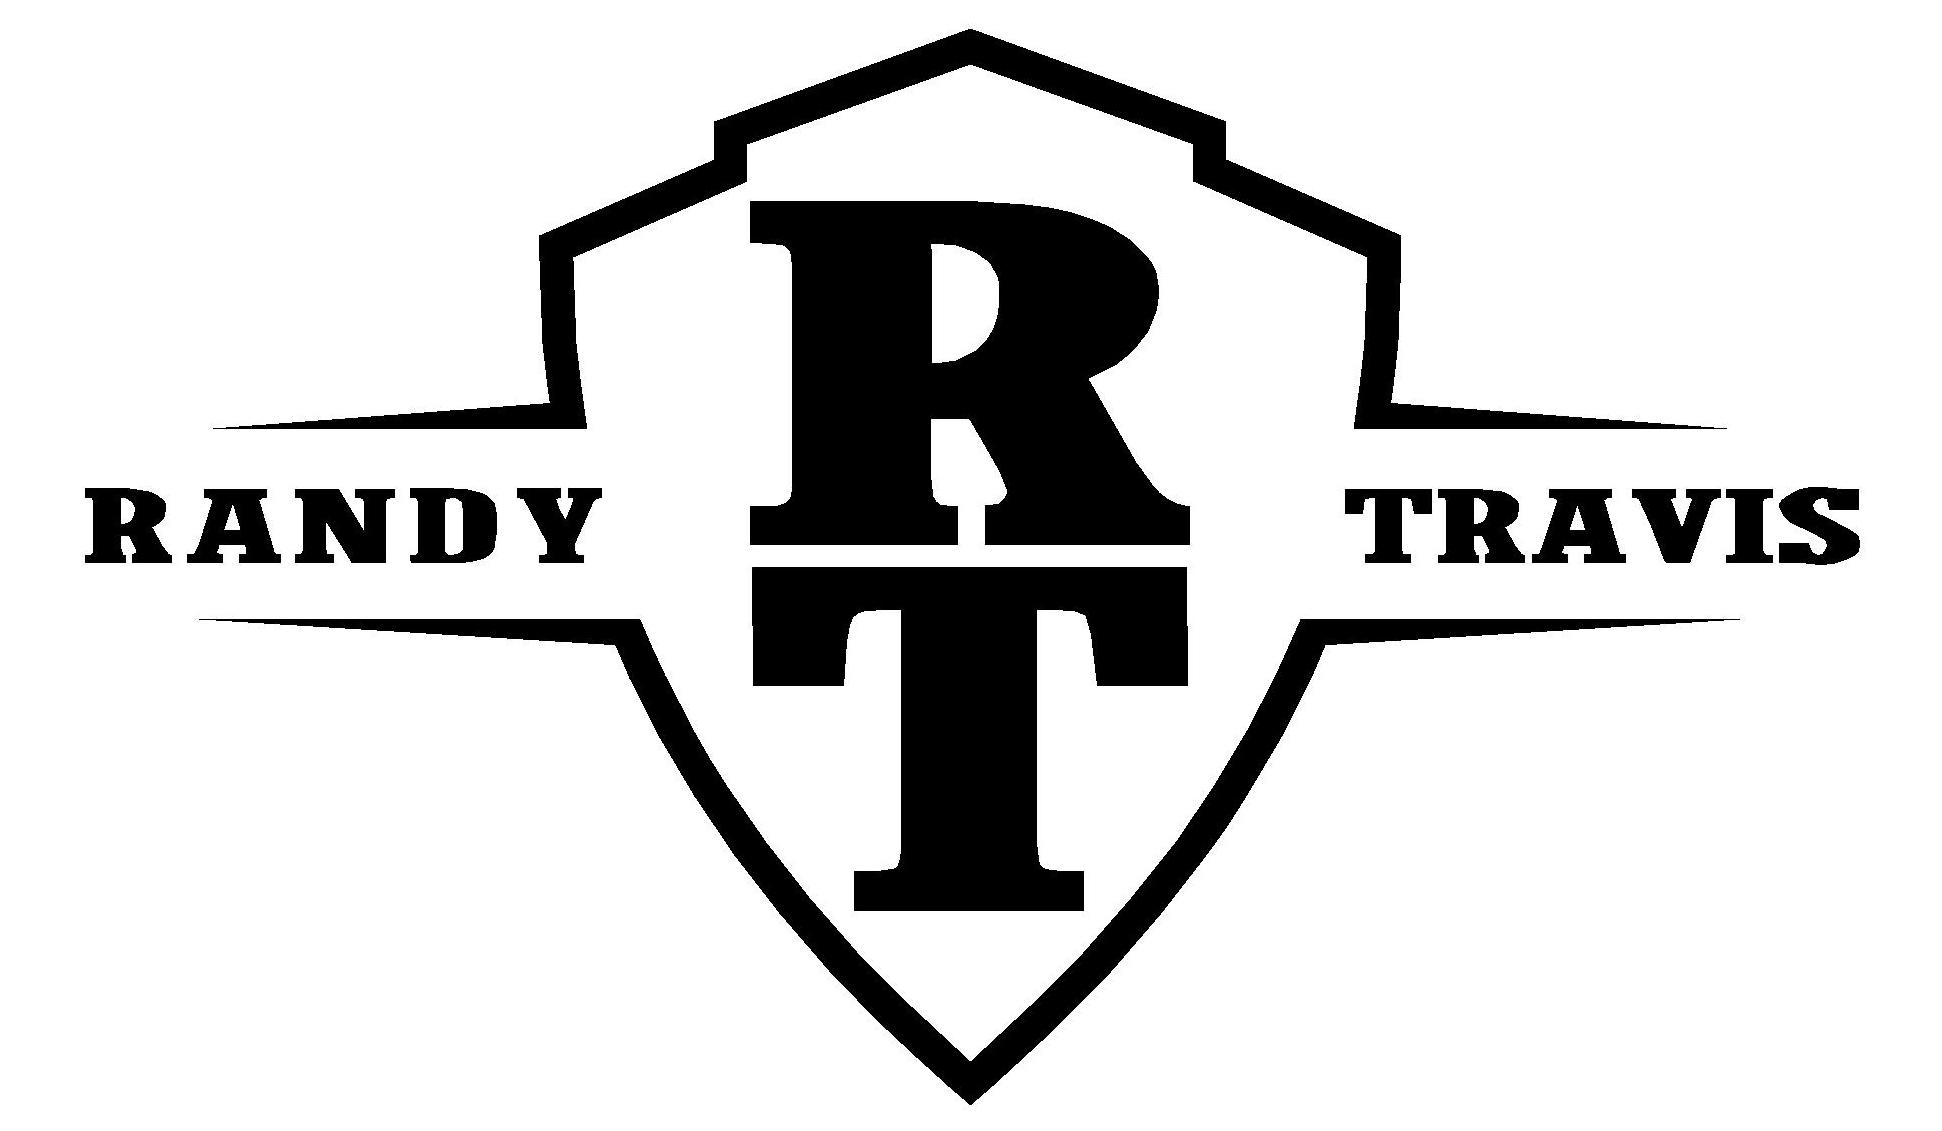 Randy Logo - Randy Travis Logo - The Morning Hangover